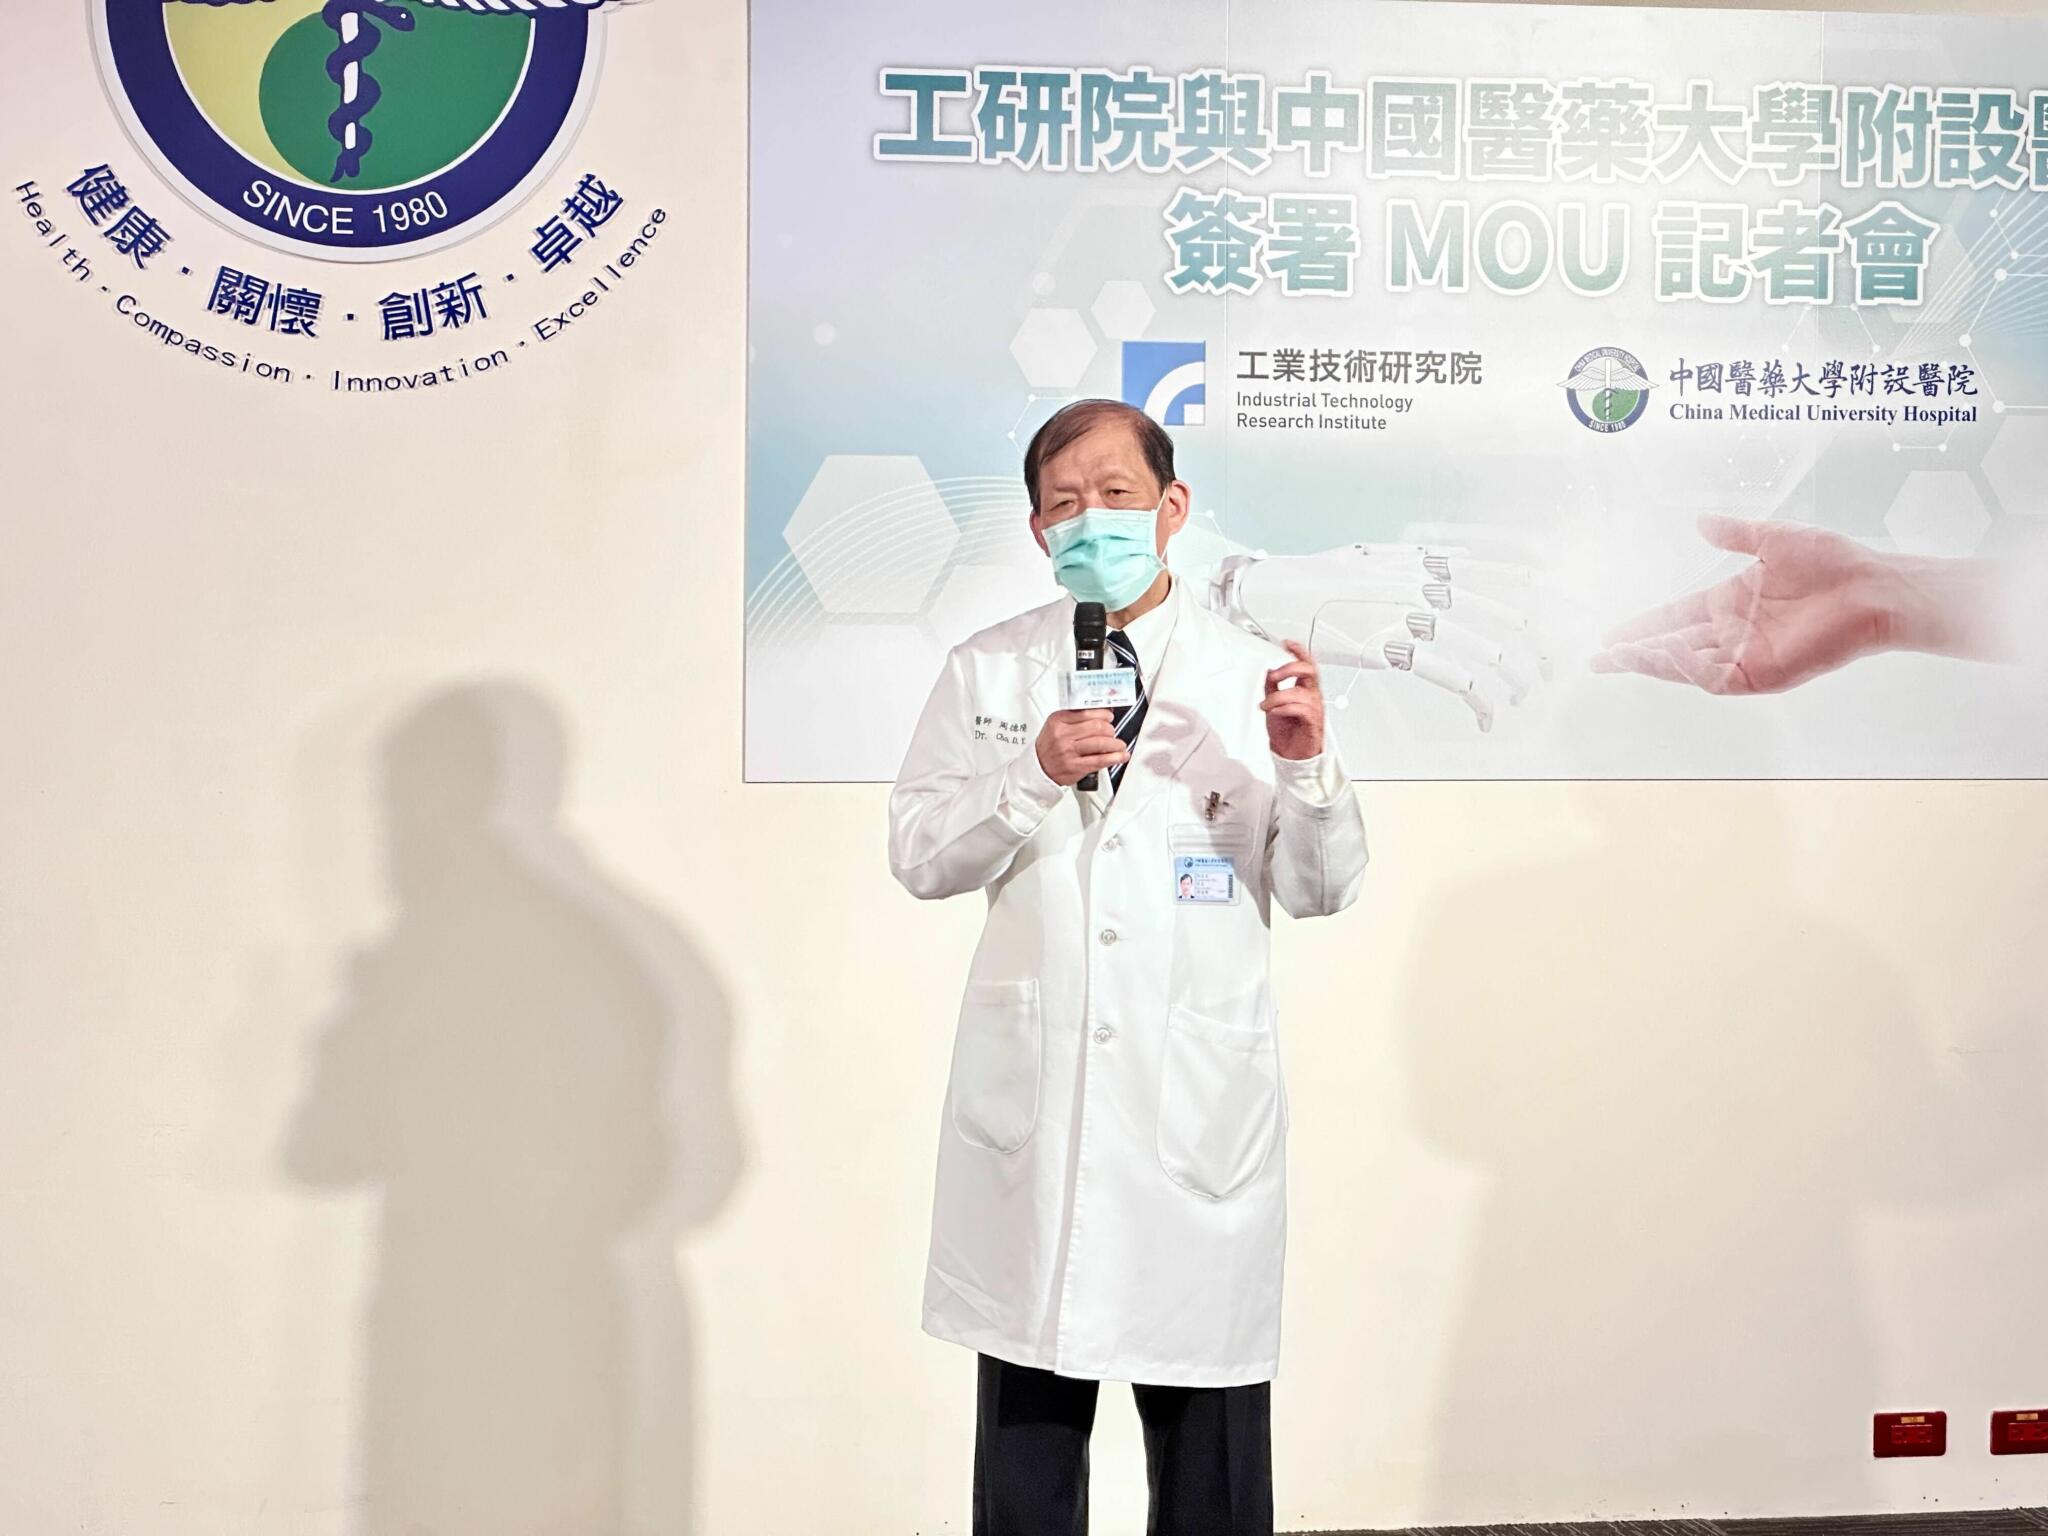 工研院攜手中國醫藥大學附設醫院  打造醫院機器人服務